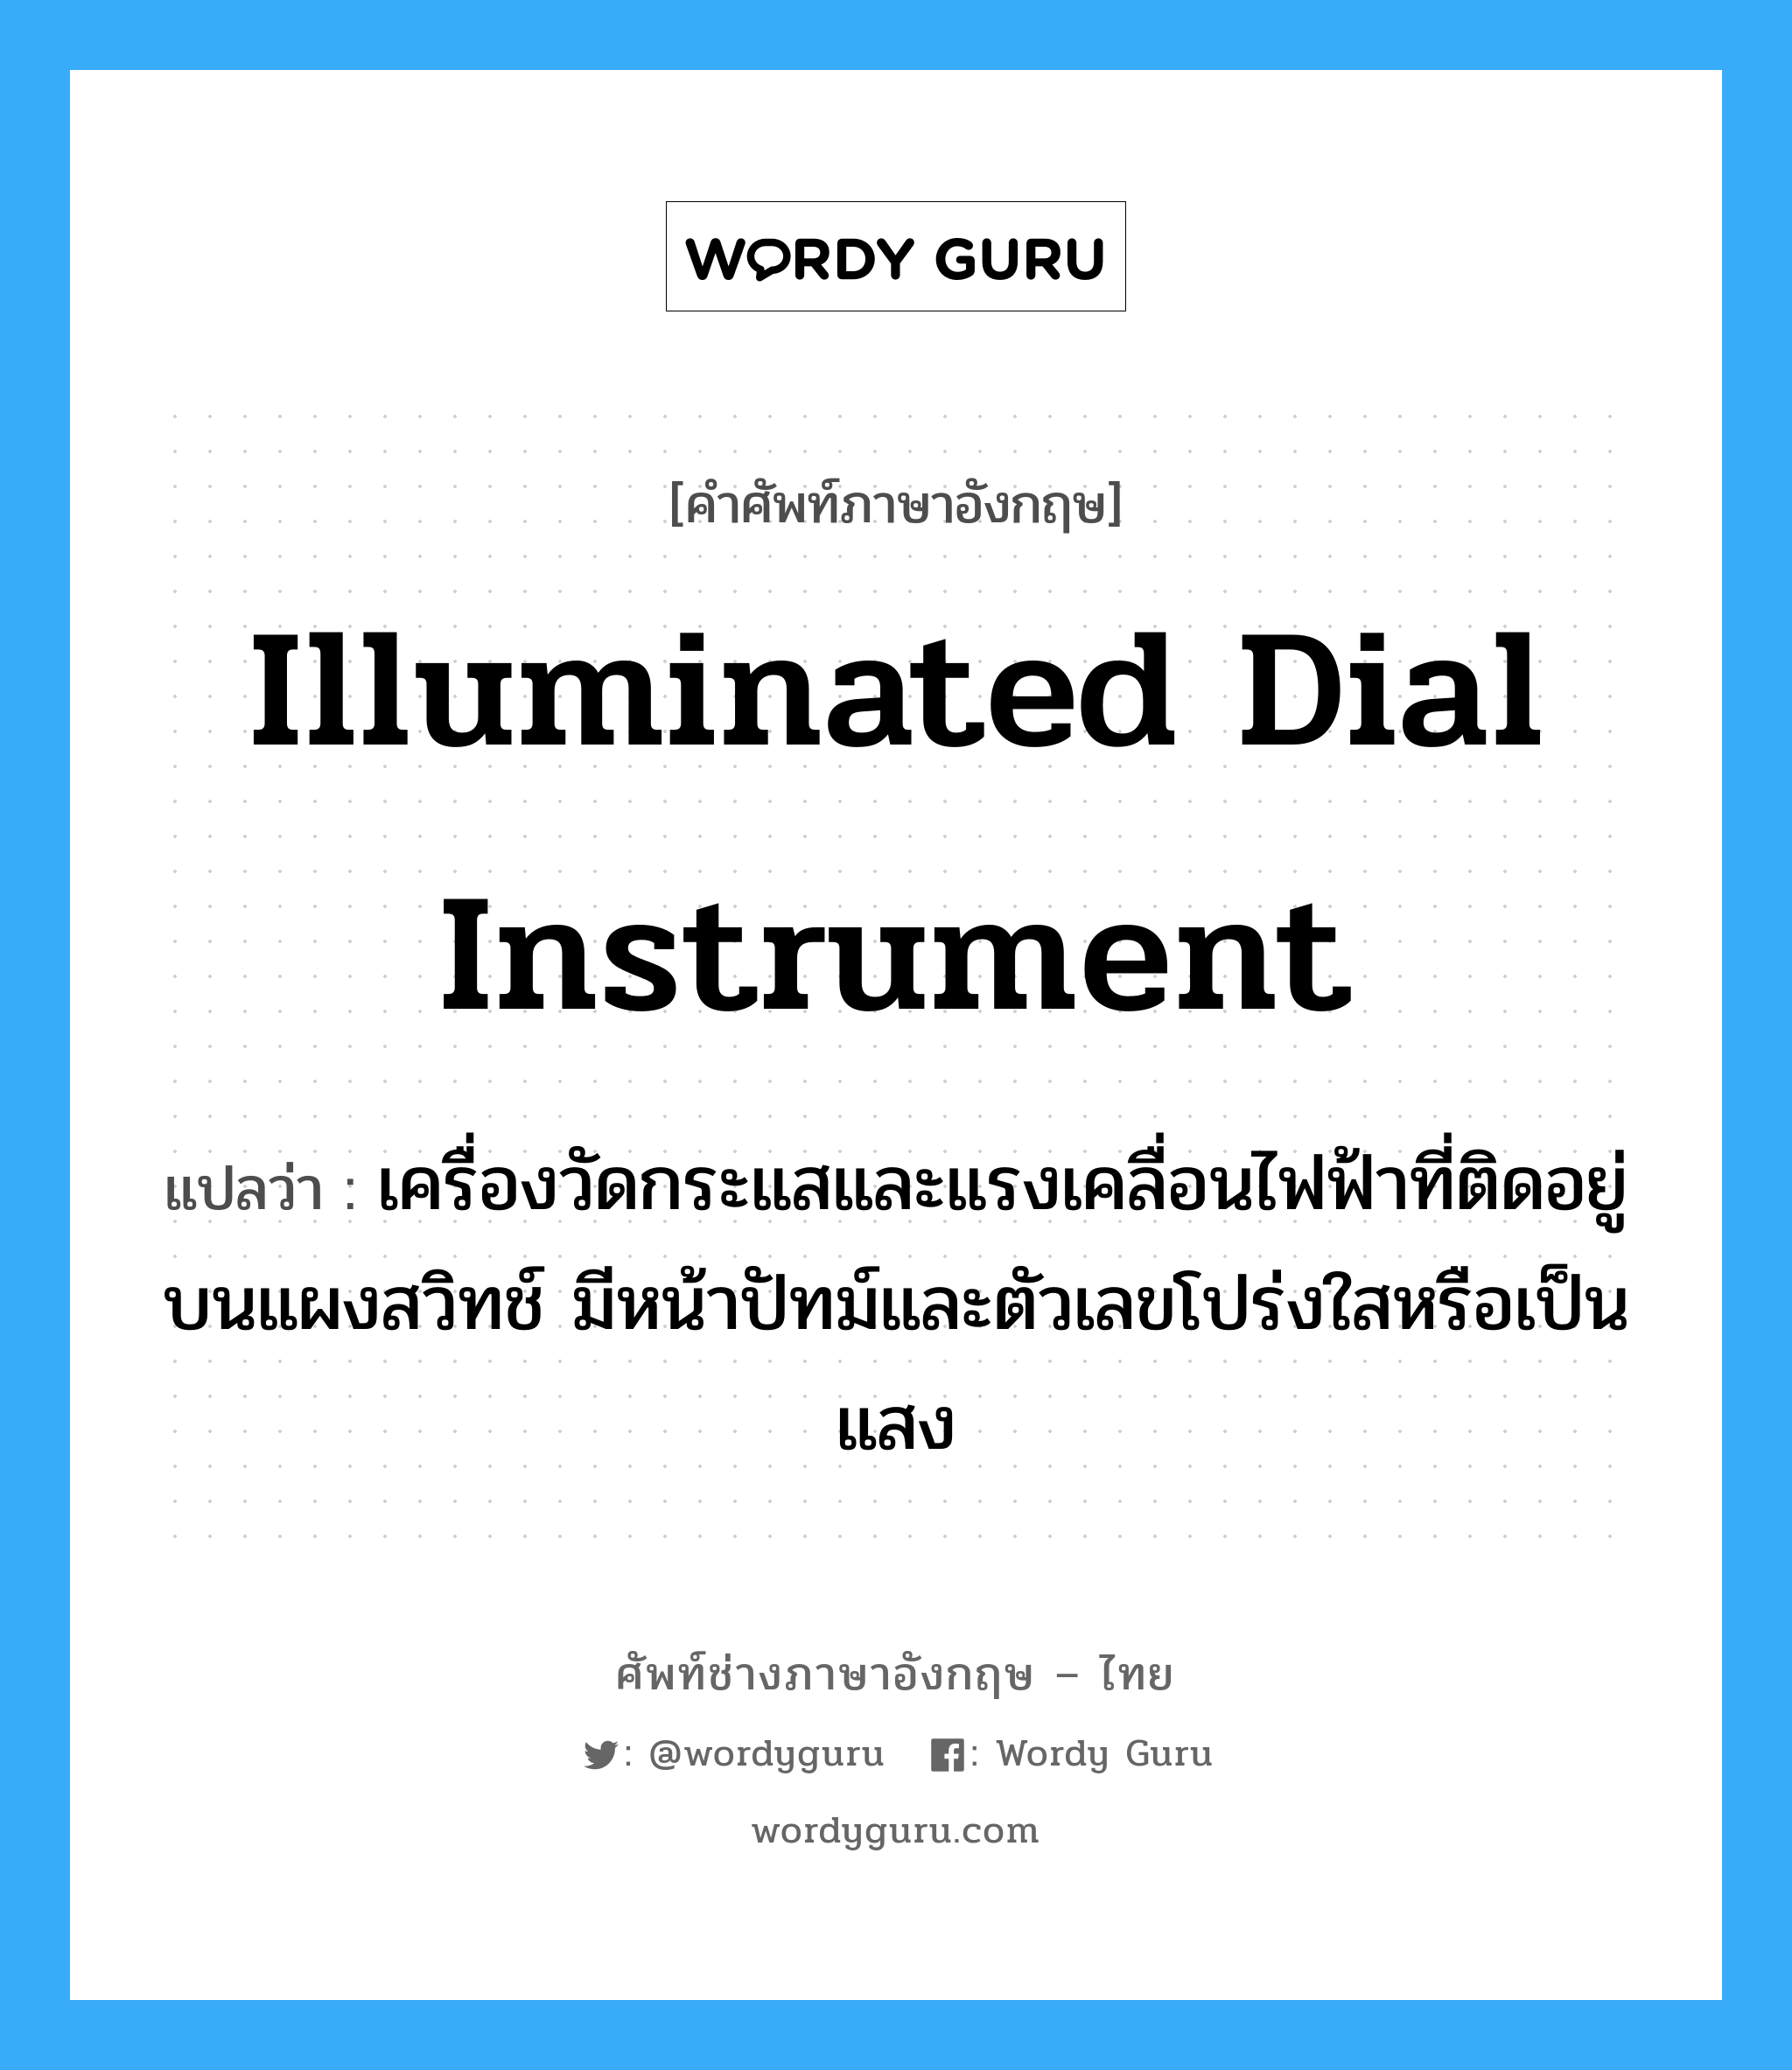 illuminated dial instrument แปลว่า?, คำศัพท์ช่างภาษาอังกฤษ - ไทย illuminated dial instrument คำศัพท์ภาษาอังกฤษ illuminated dial instrument แปลว่า เครื่องวัดกระแสและแรงเคลื่อนไฟฟ้าที่ติดอยู่บนแผงสวิทช์ มีหน้าปัทม์และตัวเลขโปร่งใสหรือเป็นแสง